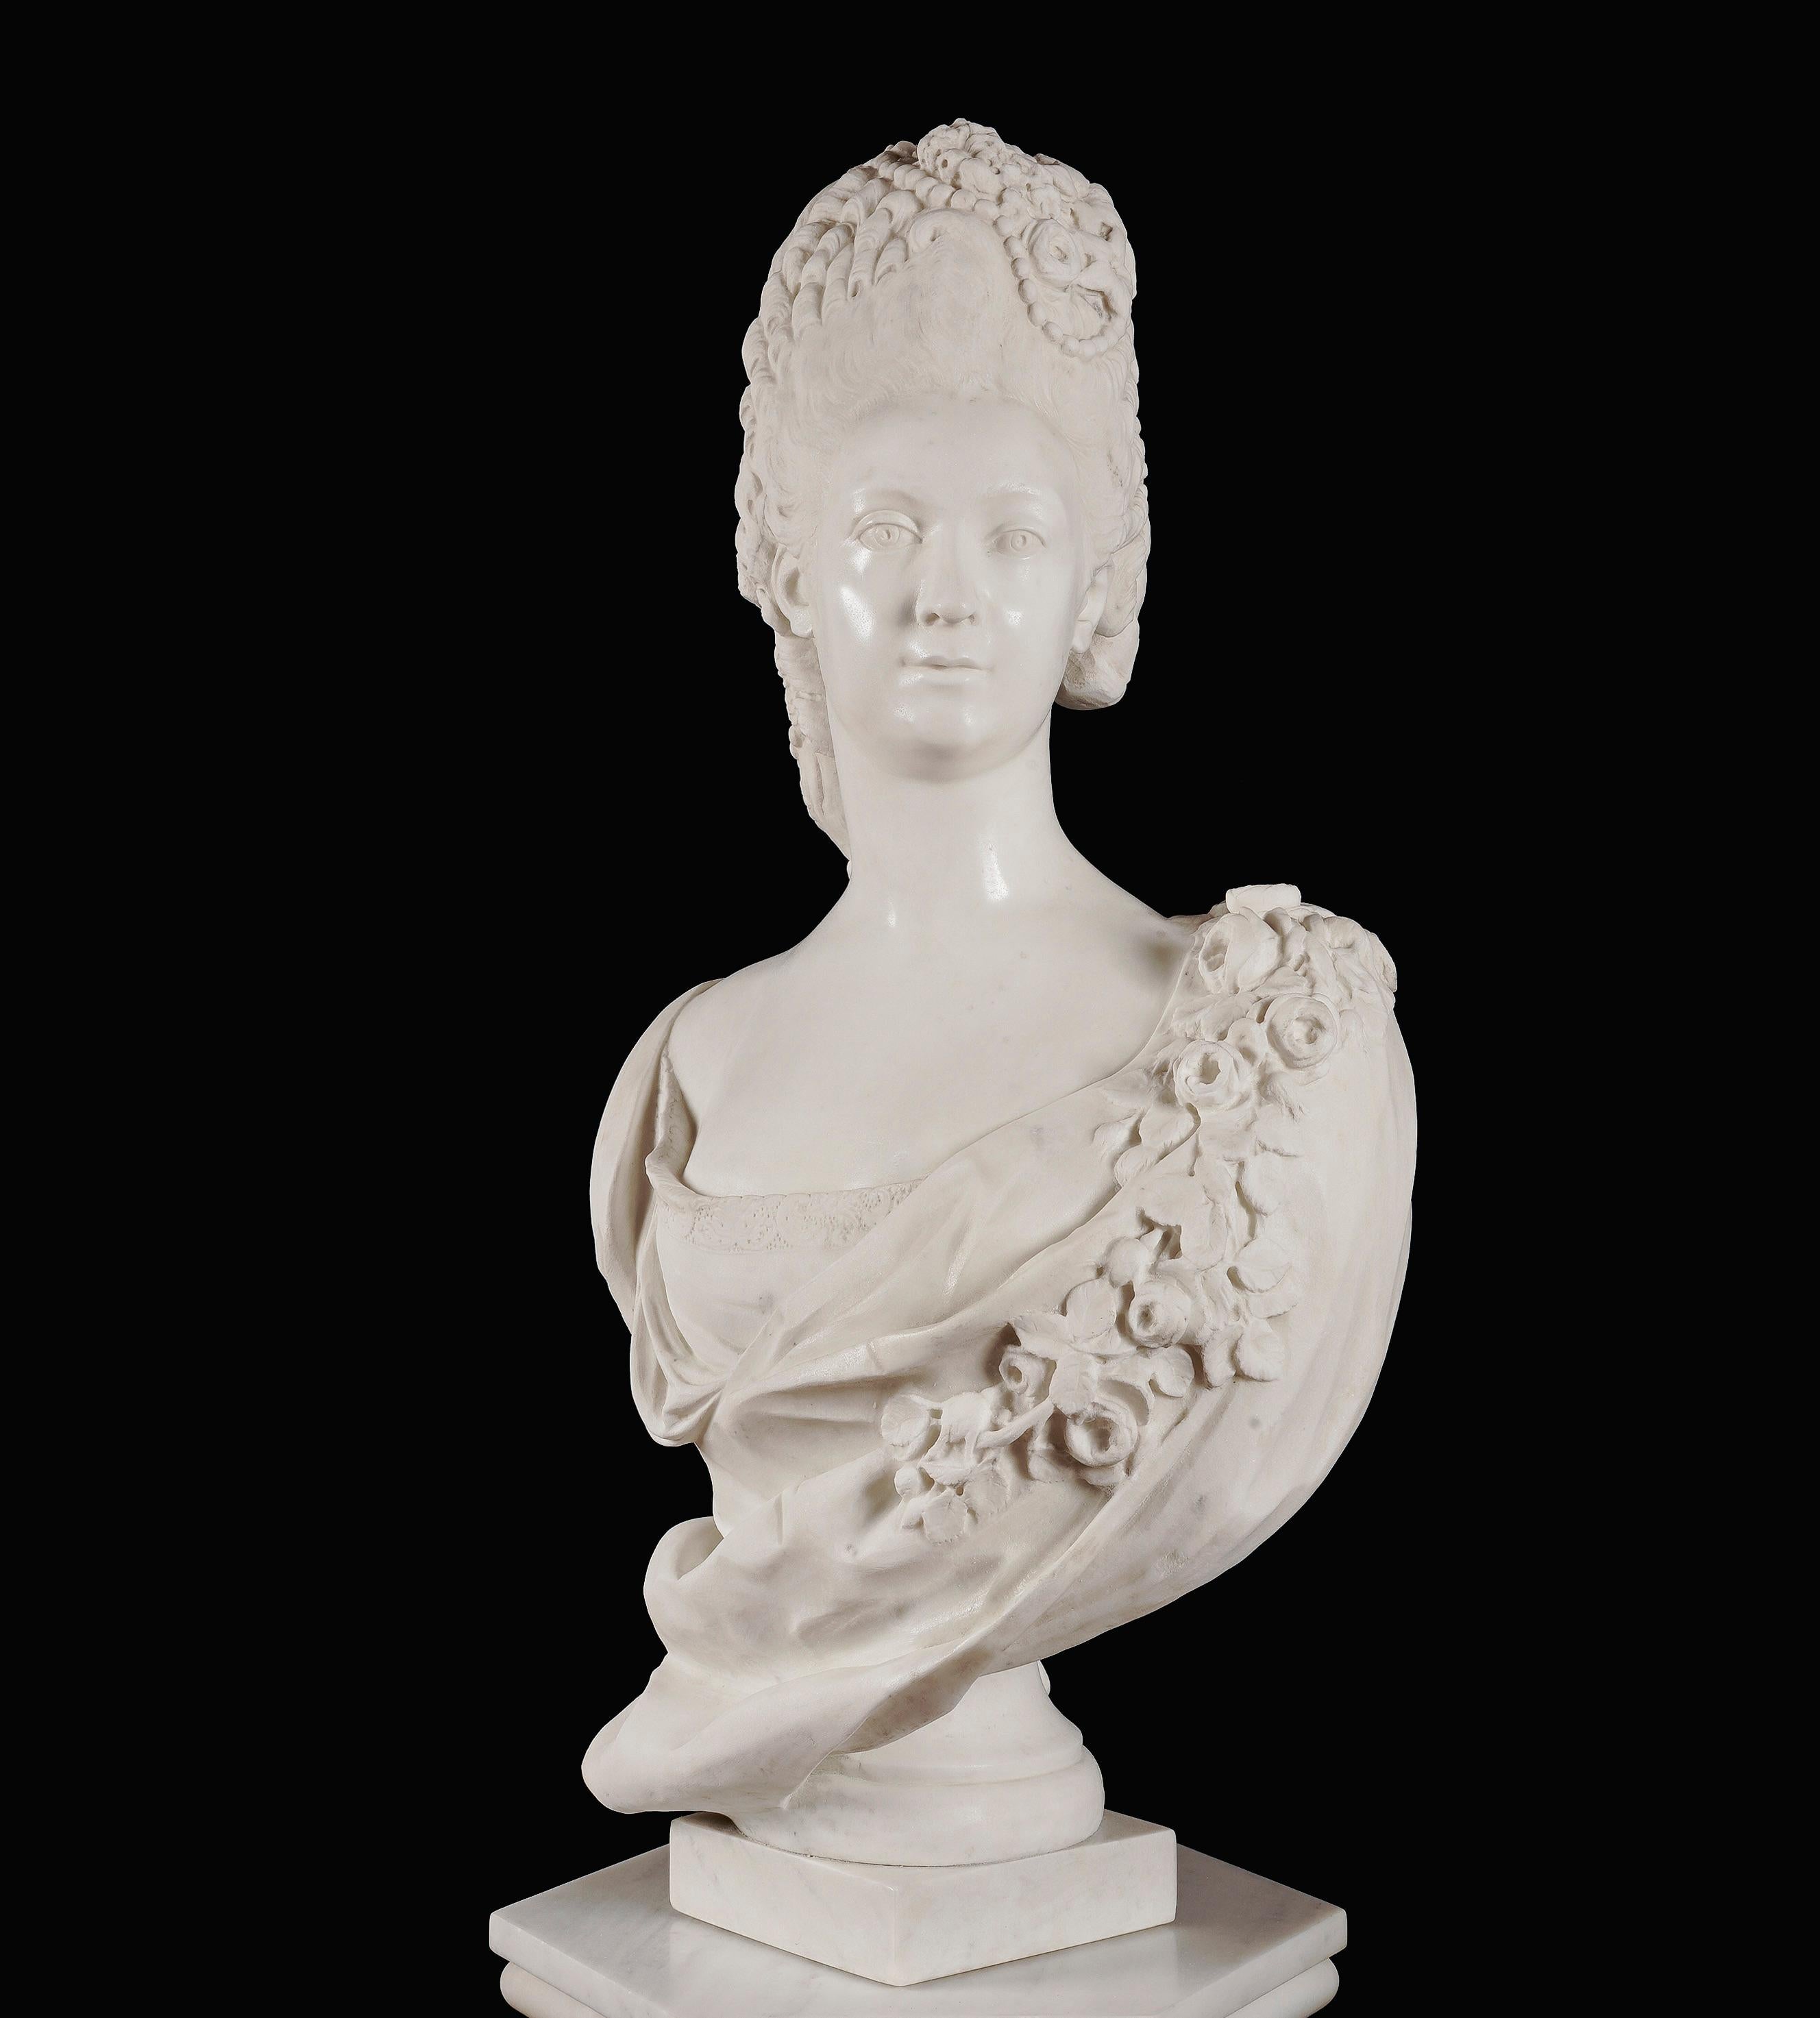 Une paire de bustes royaux

Of Clotilde of France, Reine de Sardaigne
Et Marie Adlade de Savoie, Dauphine de France

Les deux nobles se sont toutes deux sculptées dans le marbre et habillées de manière contemporaine, portant des vêtements